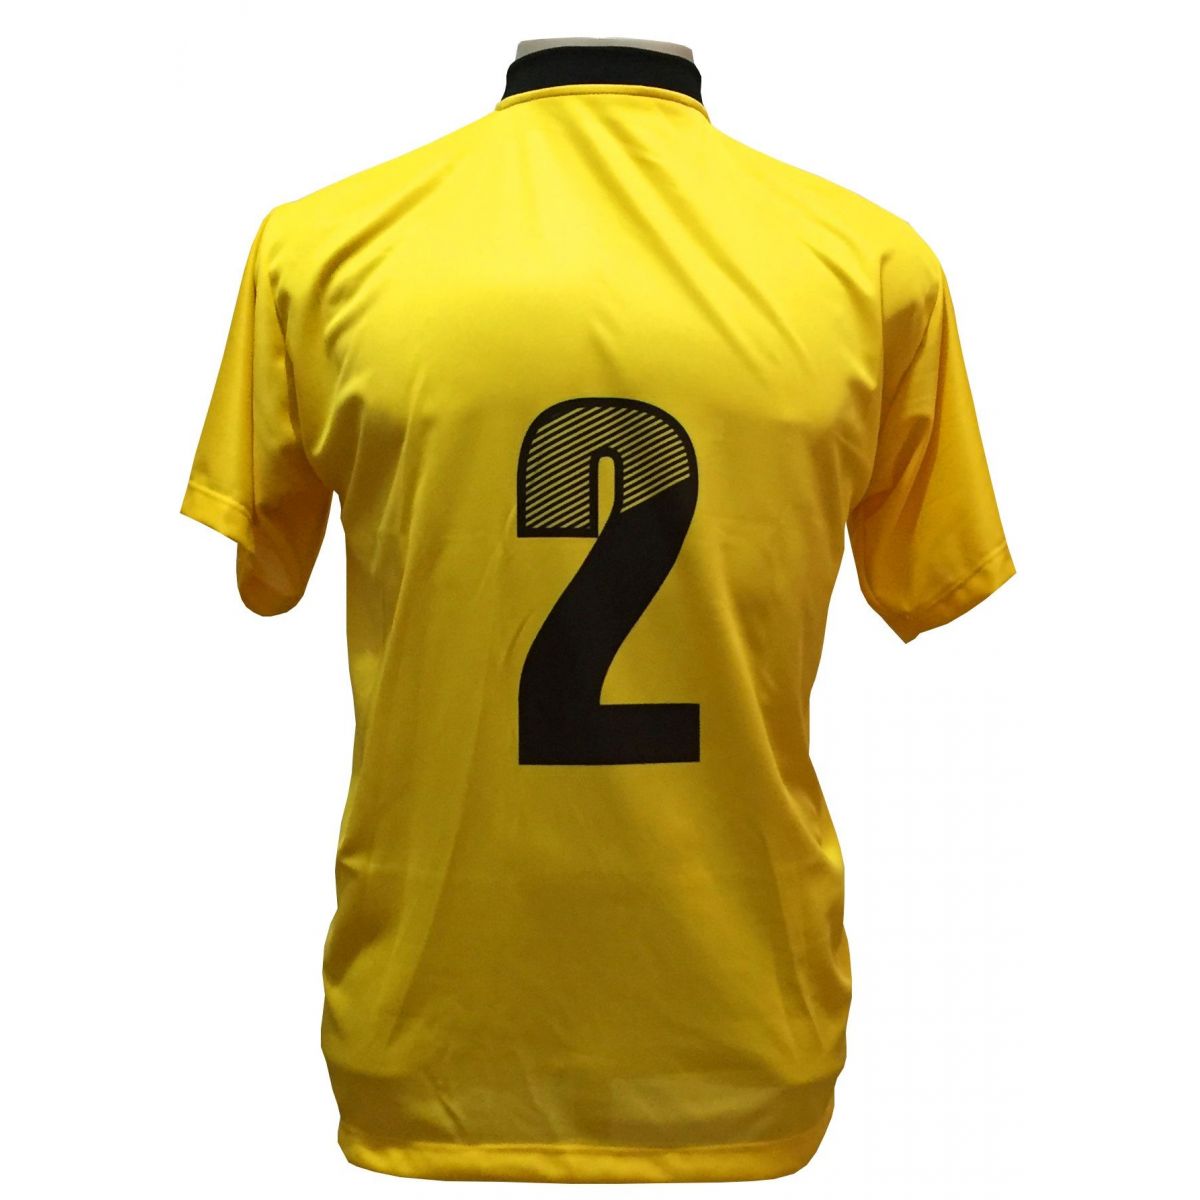 Uniforme Esportivo com 18 camisas modelo Roma Amarelo/Preto + 18 calções modelo Madrid + 1 Goleiro + Brindes